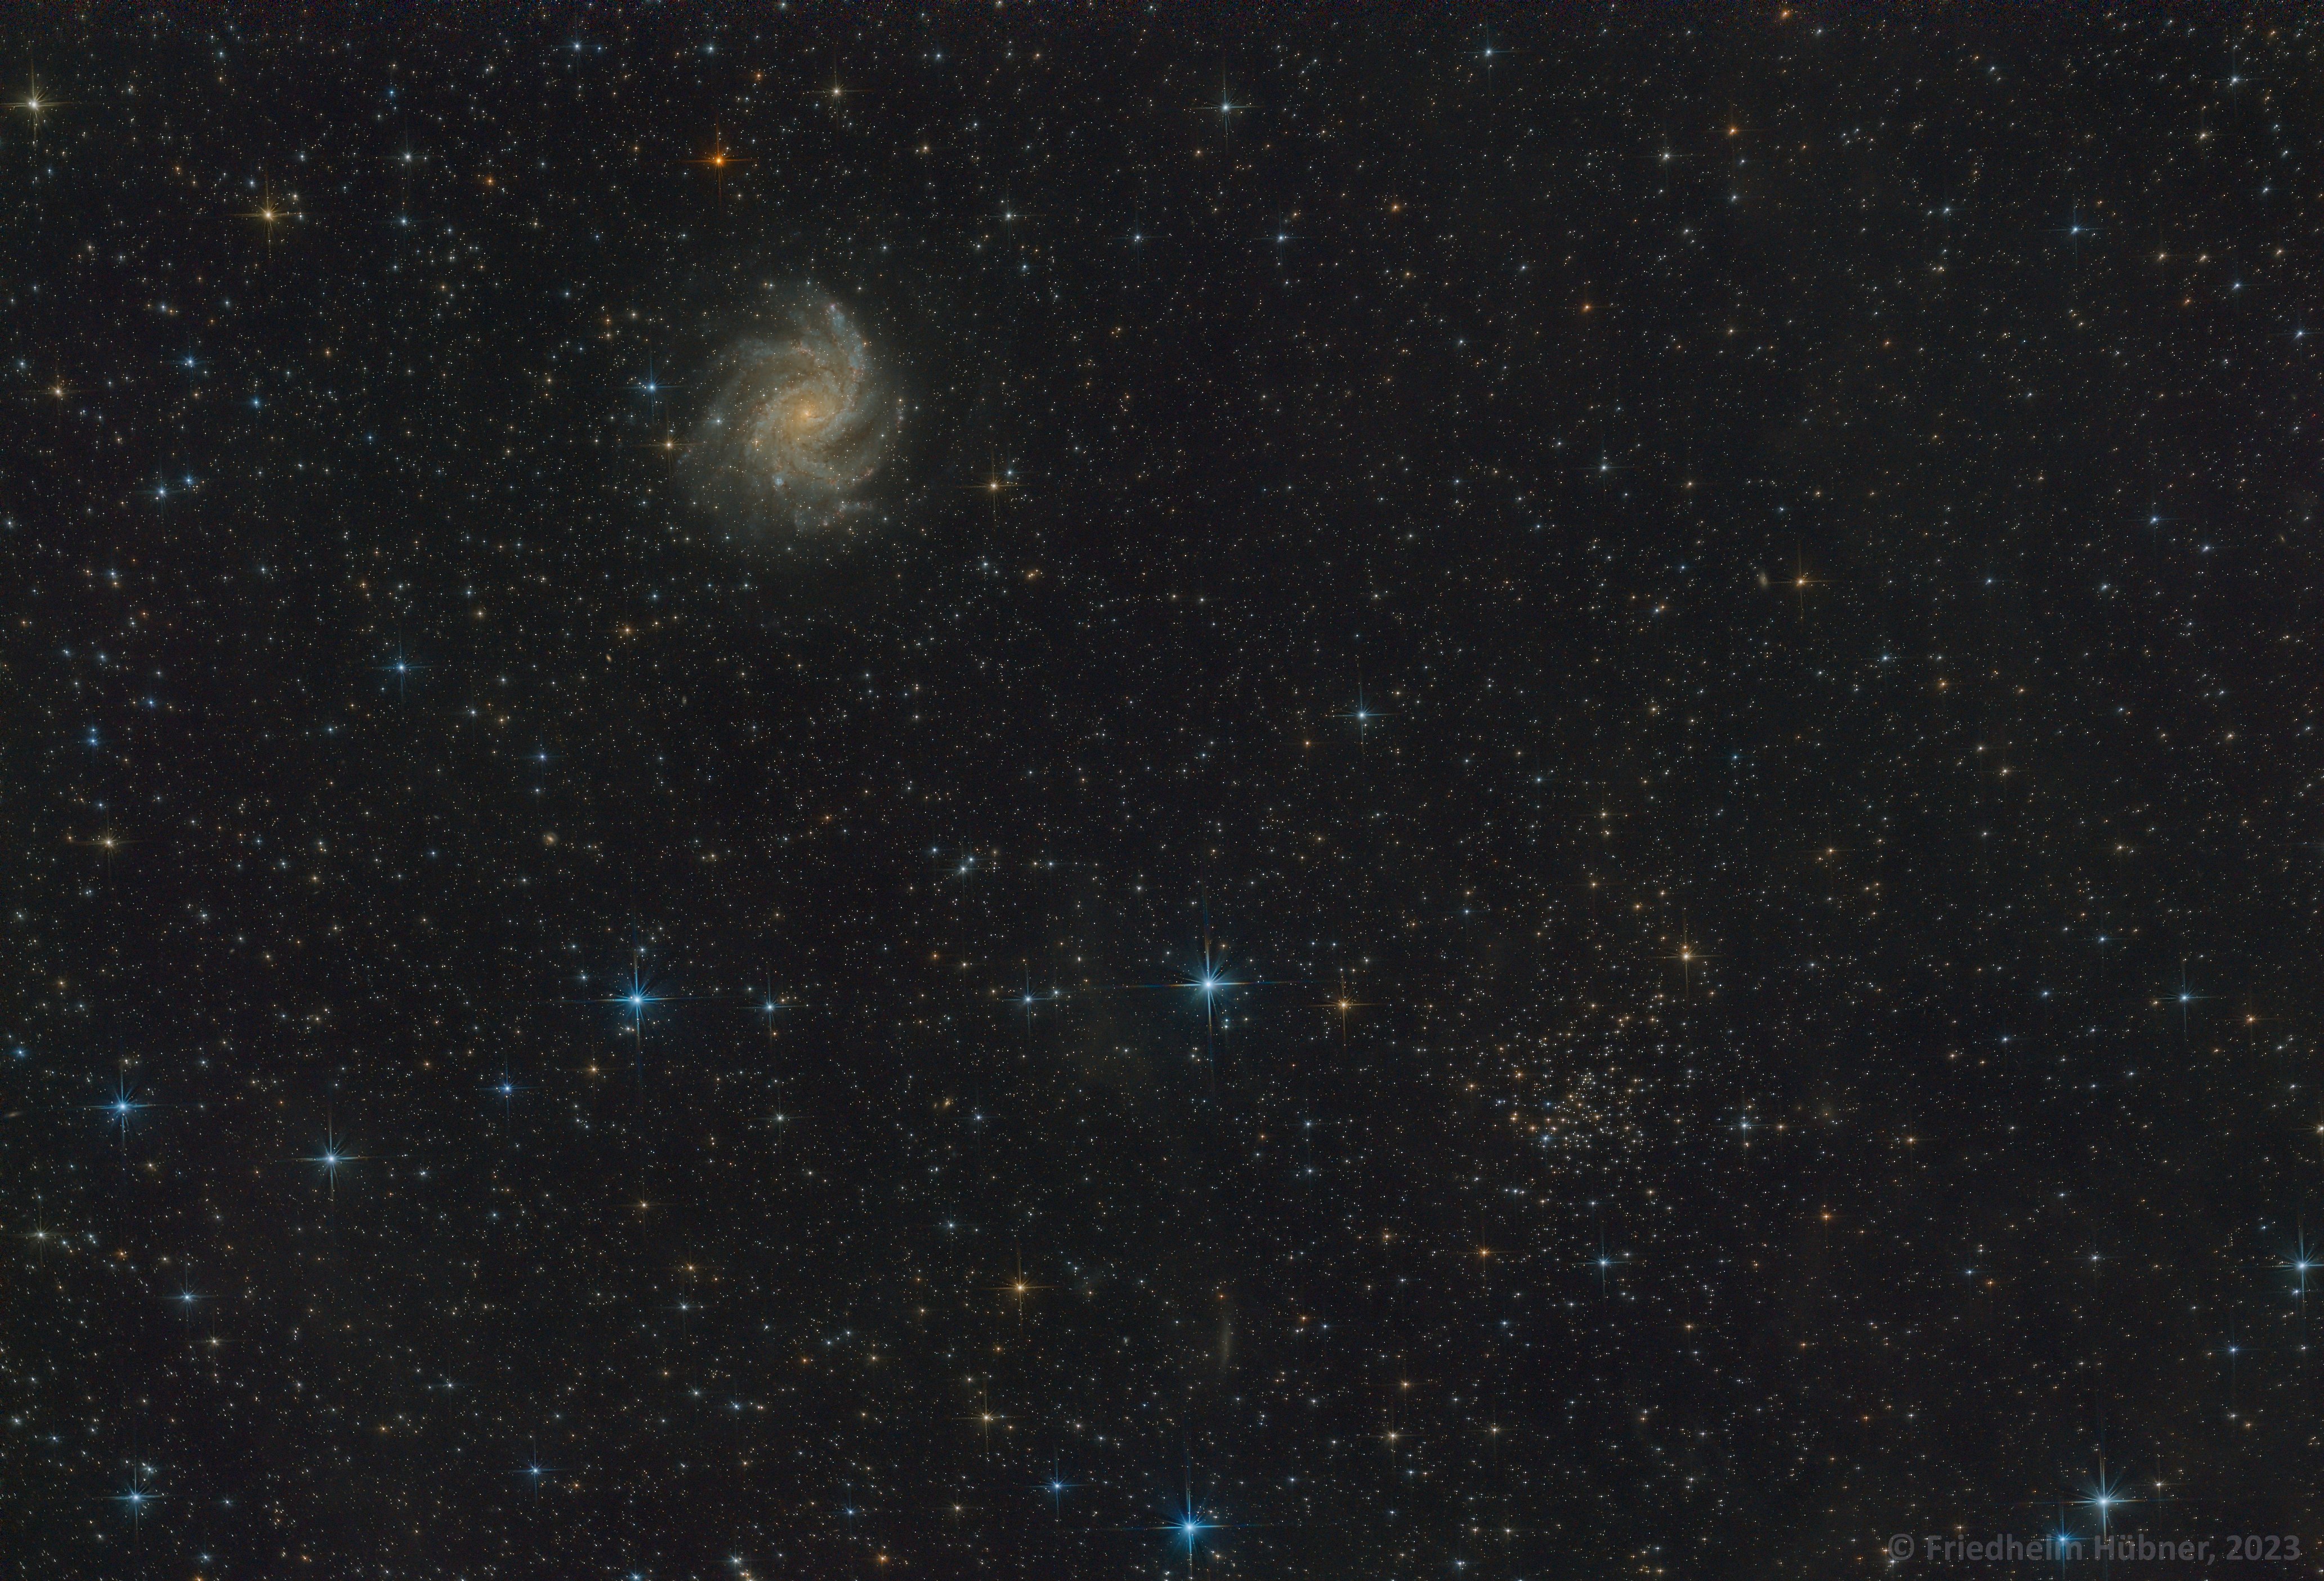 NGC 6946 and NGC 6939 (Cep)